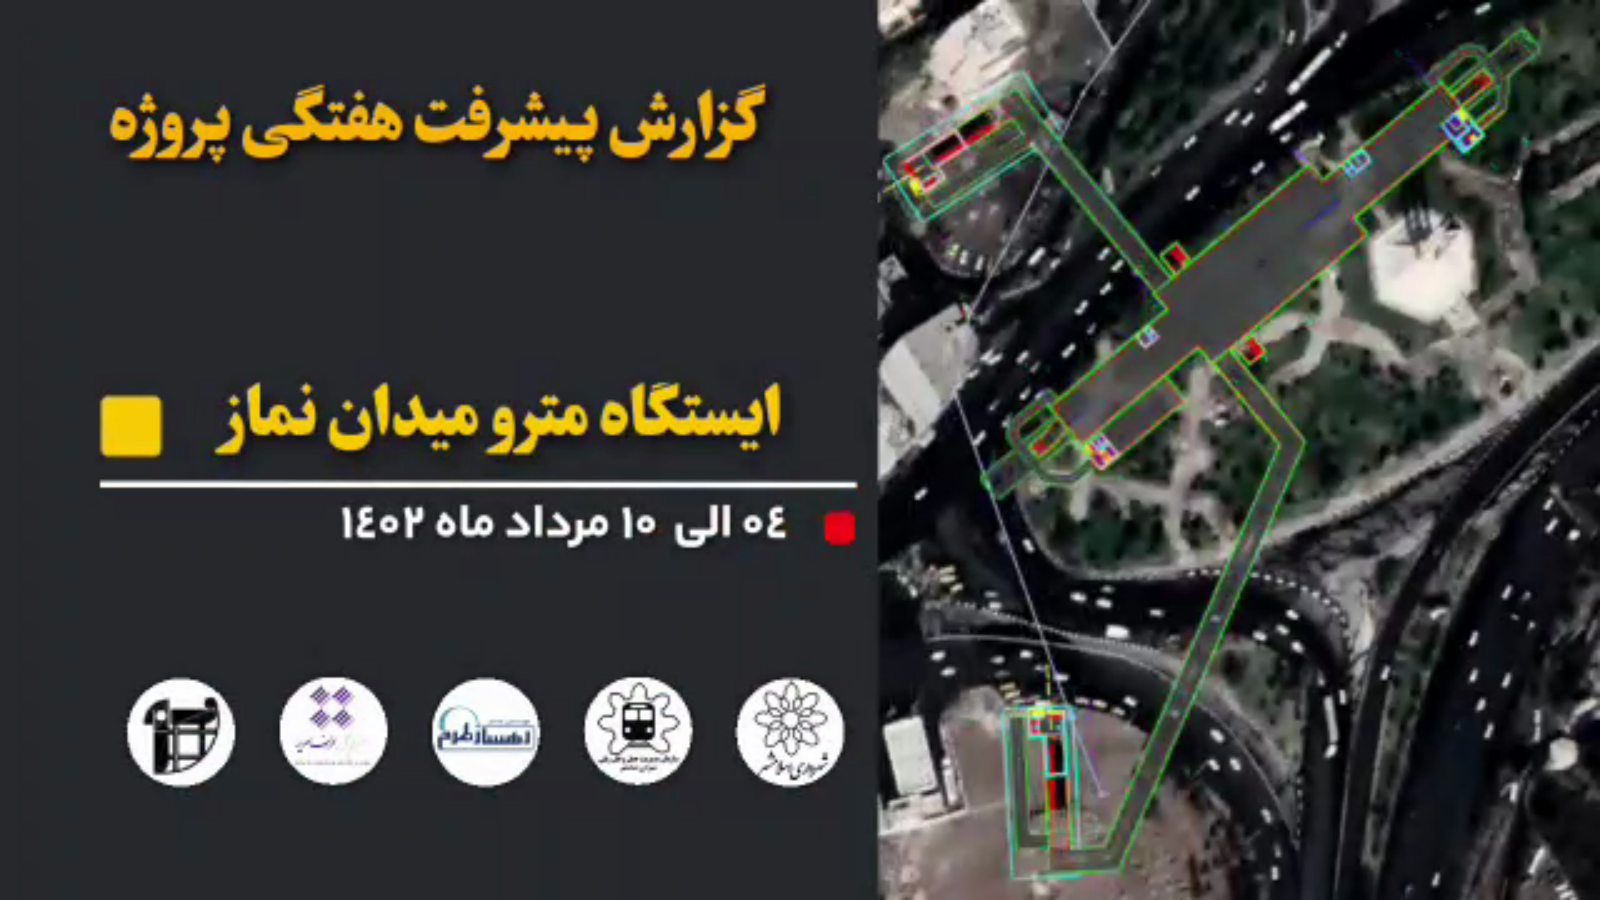 گزارش هفتگی پیشرفت عملیات اجرایی پروژه ایستگاه مترو میدان نماز اسلامشهر از تاریخ 1402/05/4 الی 1402/05/10: